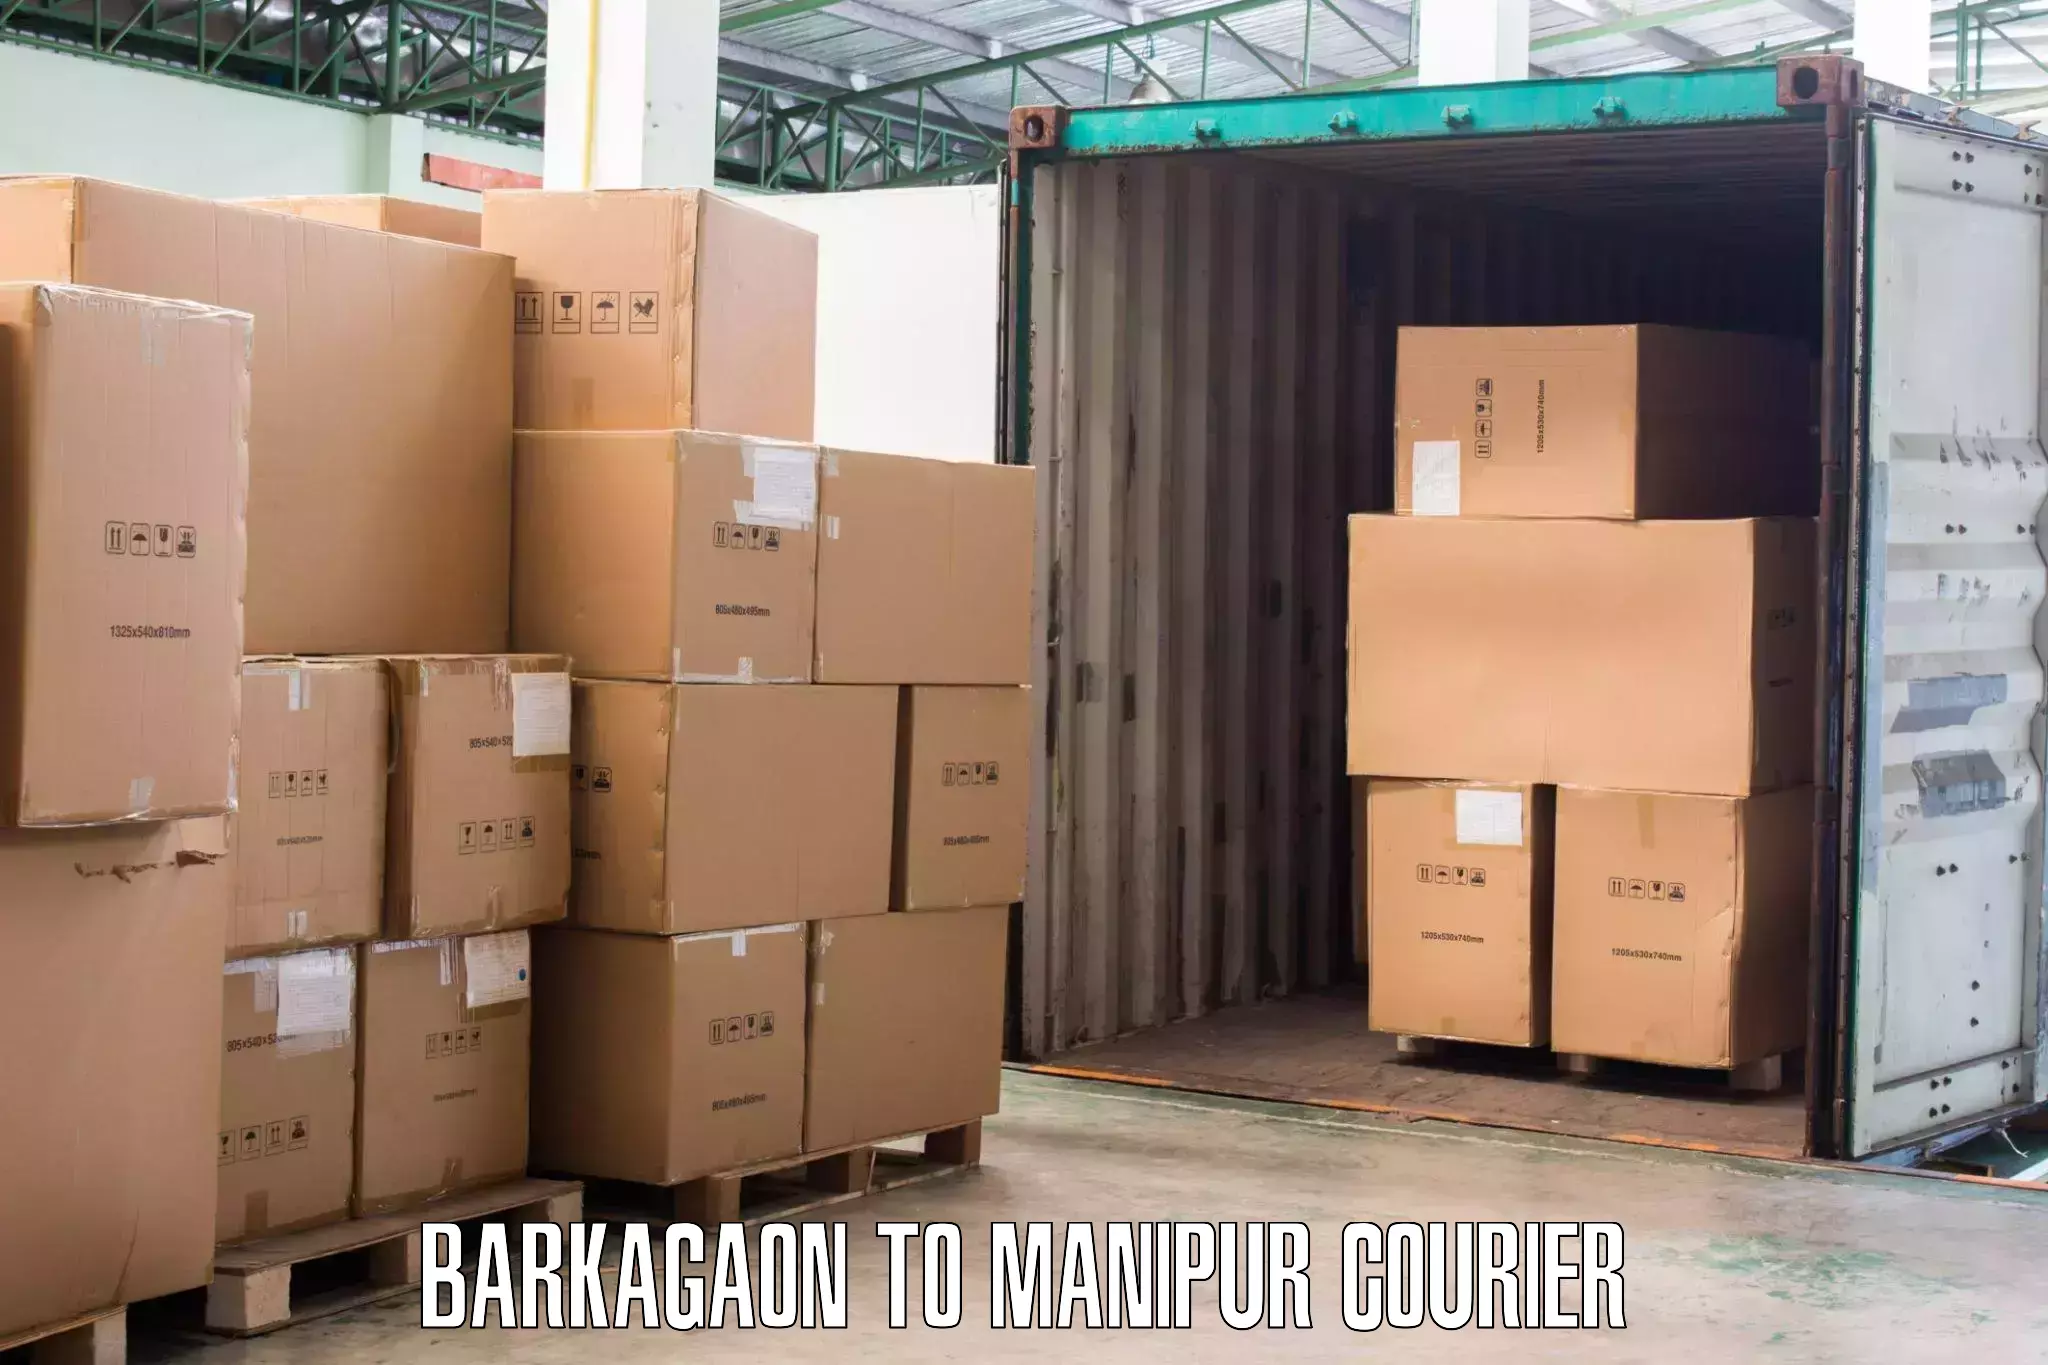 Home moving experts Barkagaon to Moirang